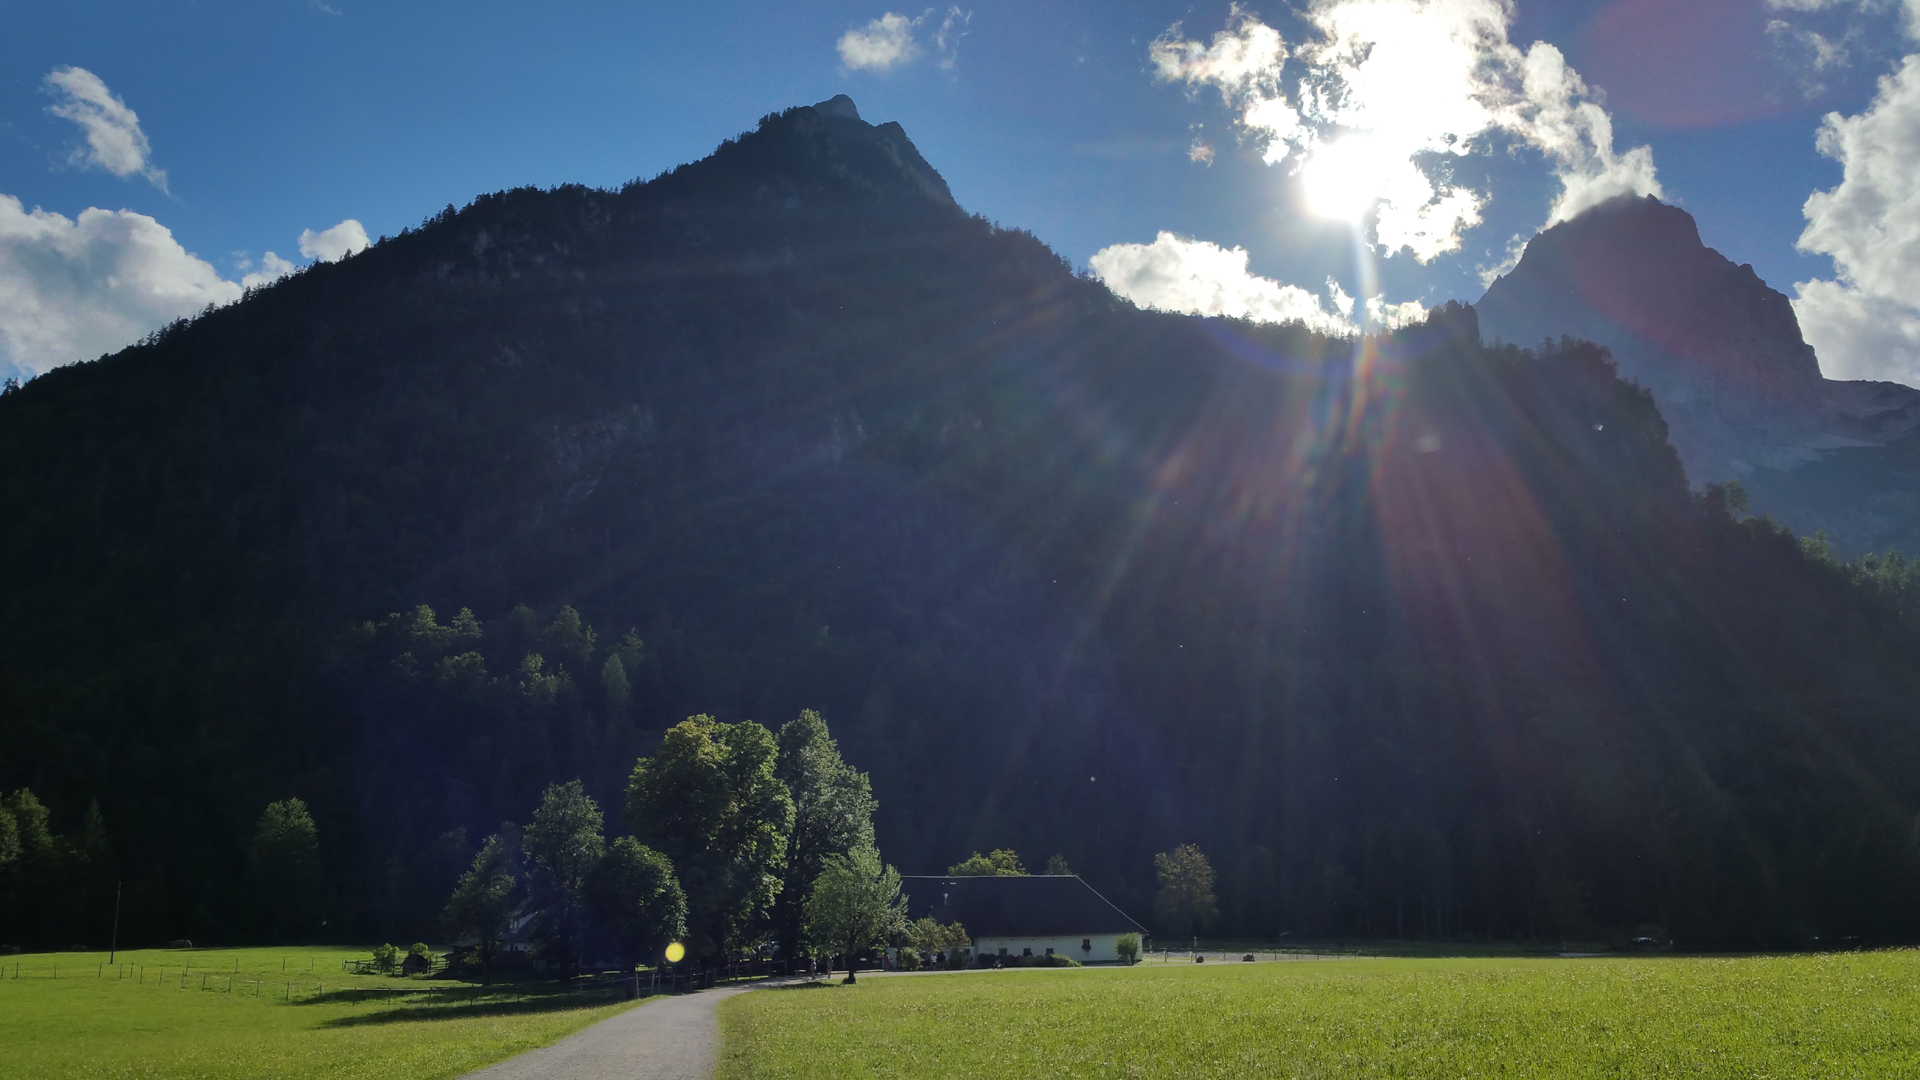 Fotostrecke Gegenlicht 11: Blick auf das "Polsterstüberl" unweit des Schiederweiher in Hinterstoder, Oberösterreich